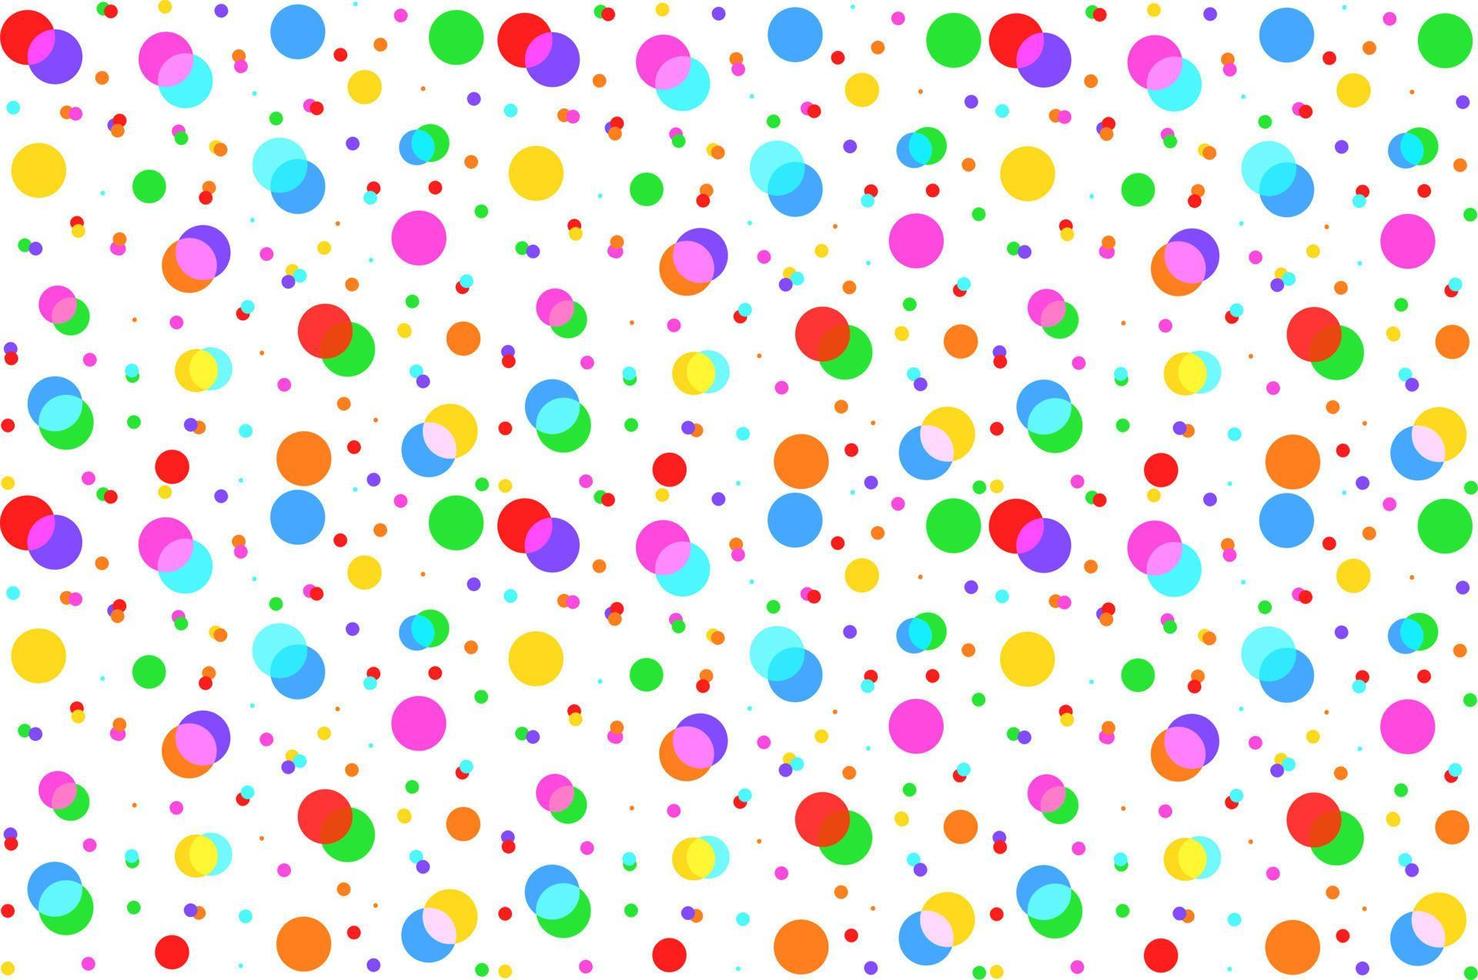 fundo de confetes dispersos de cores diferentes. ilustração vetorial vetor